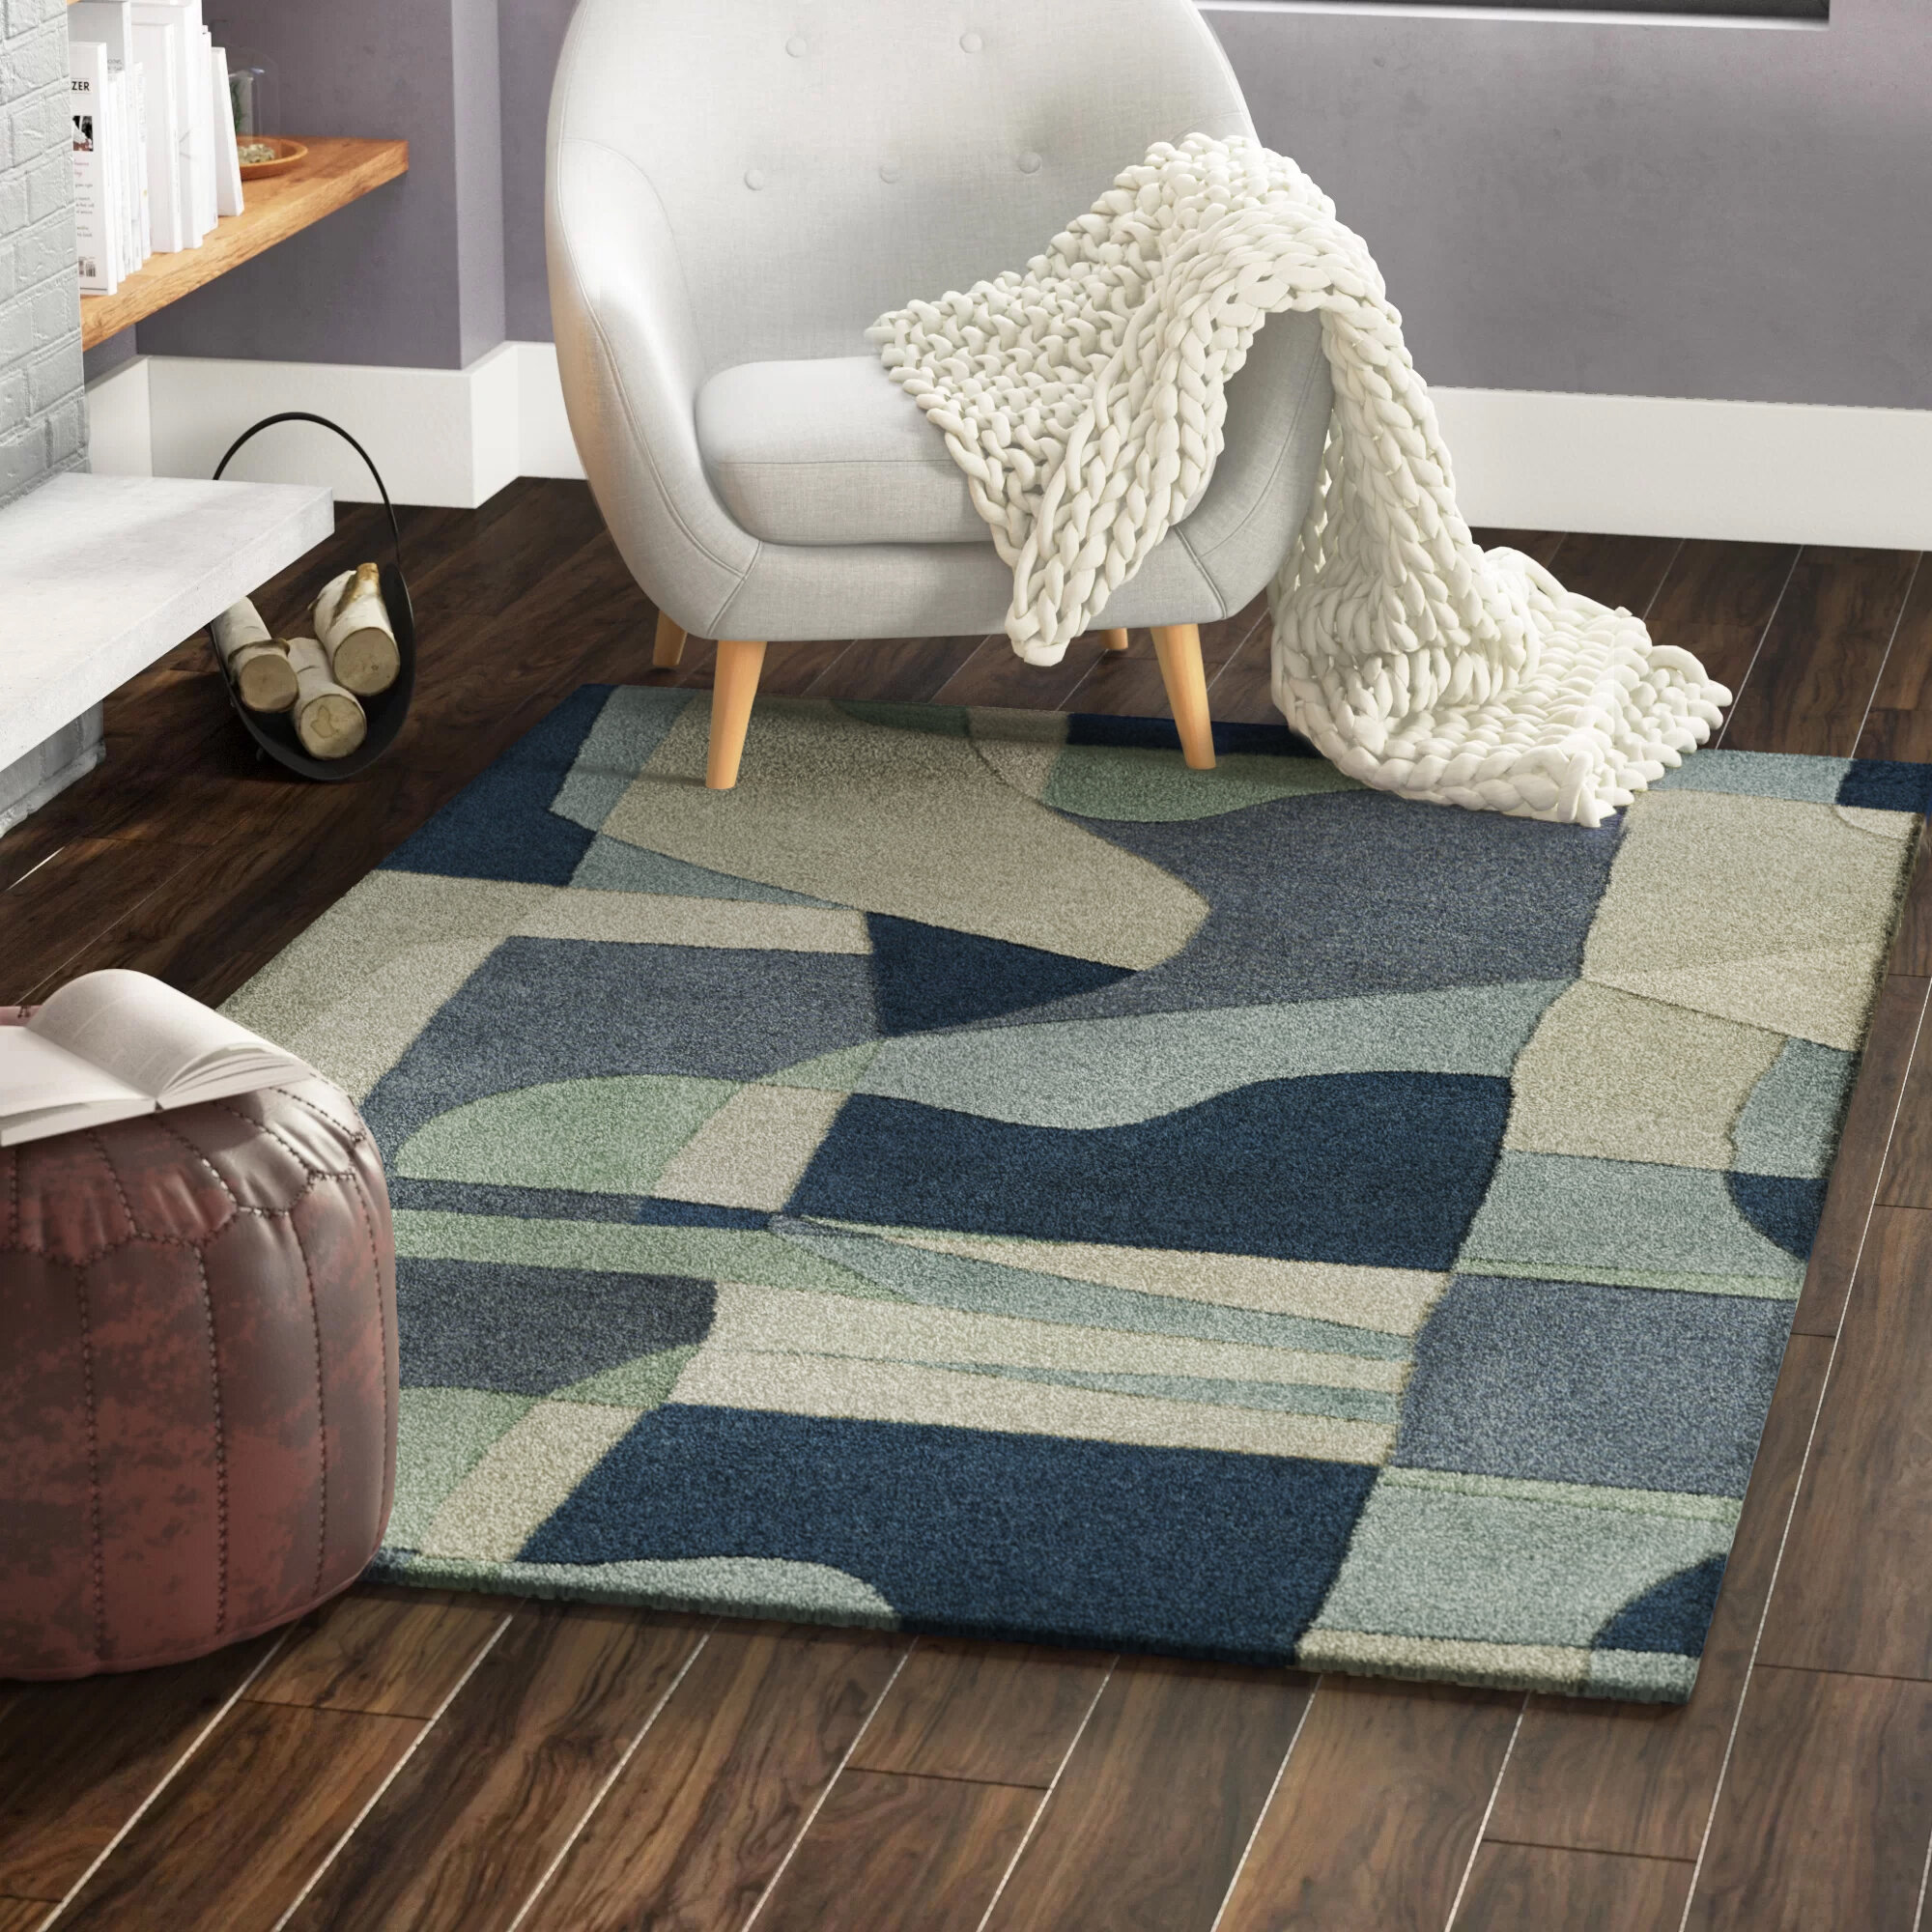 Indian Art Mats Wool Area Rug 2x3 Ft New Mat Small Carpets Home Decor Rugs Geometric Carpet Beige Door Mat Utility Mat Kitchen Rug